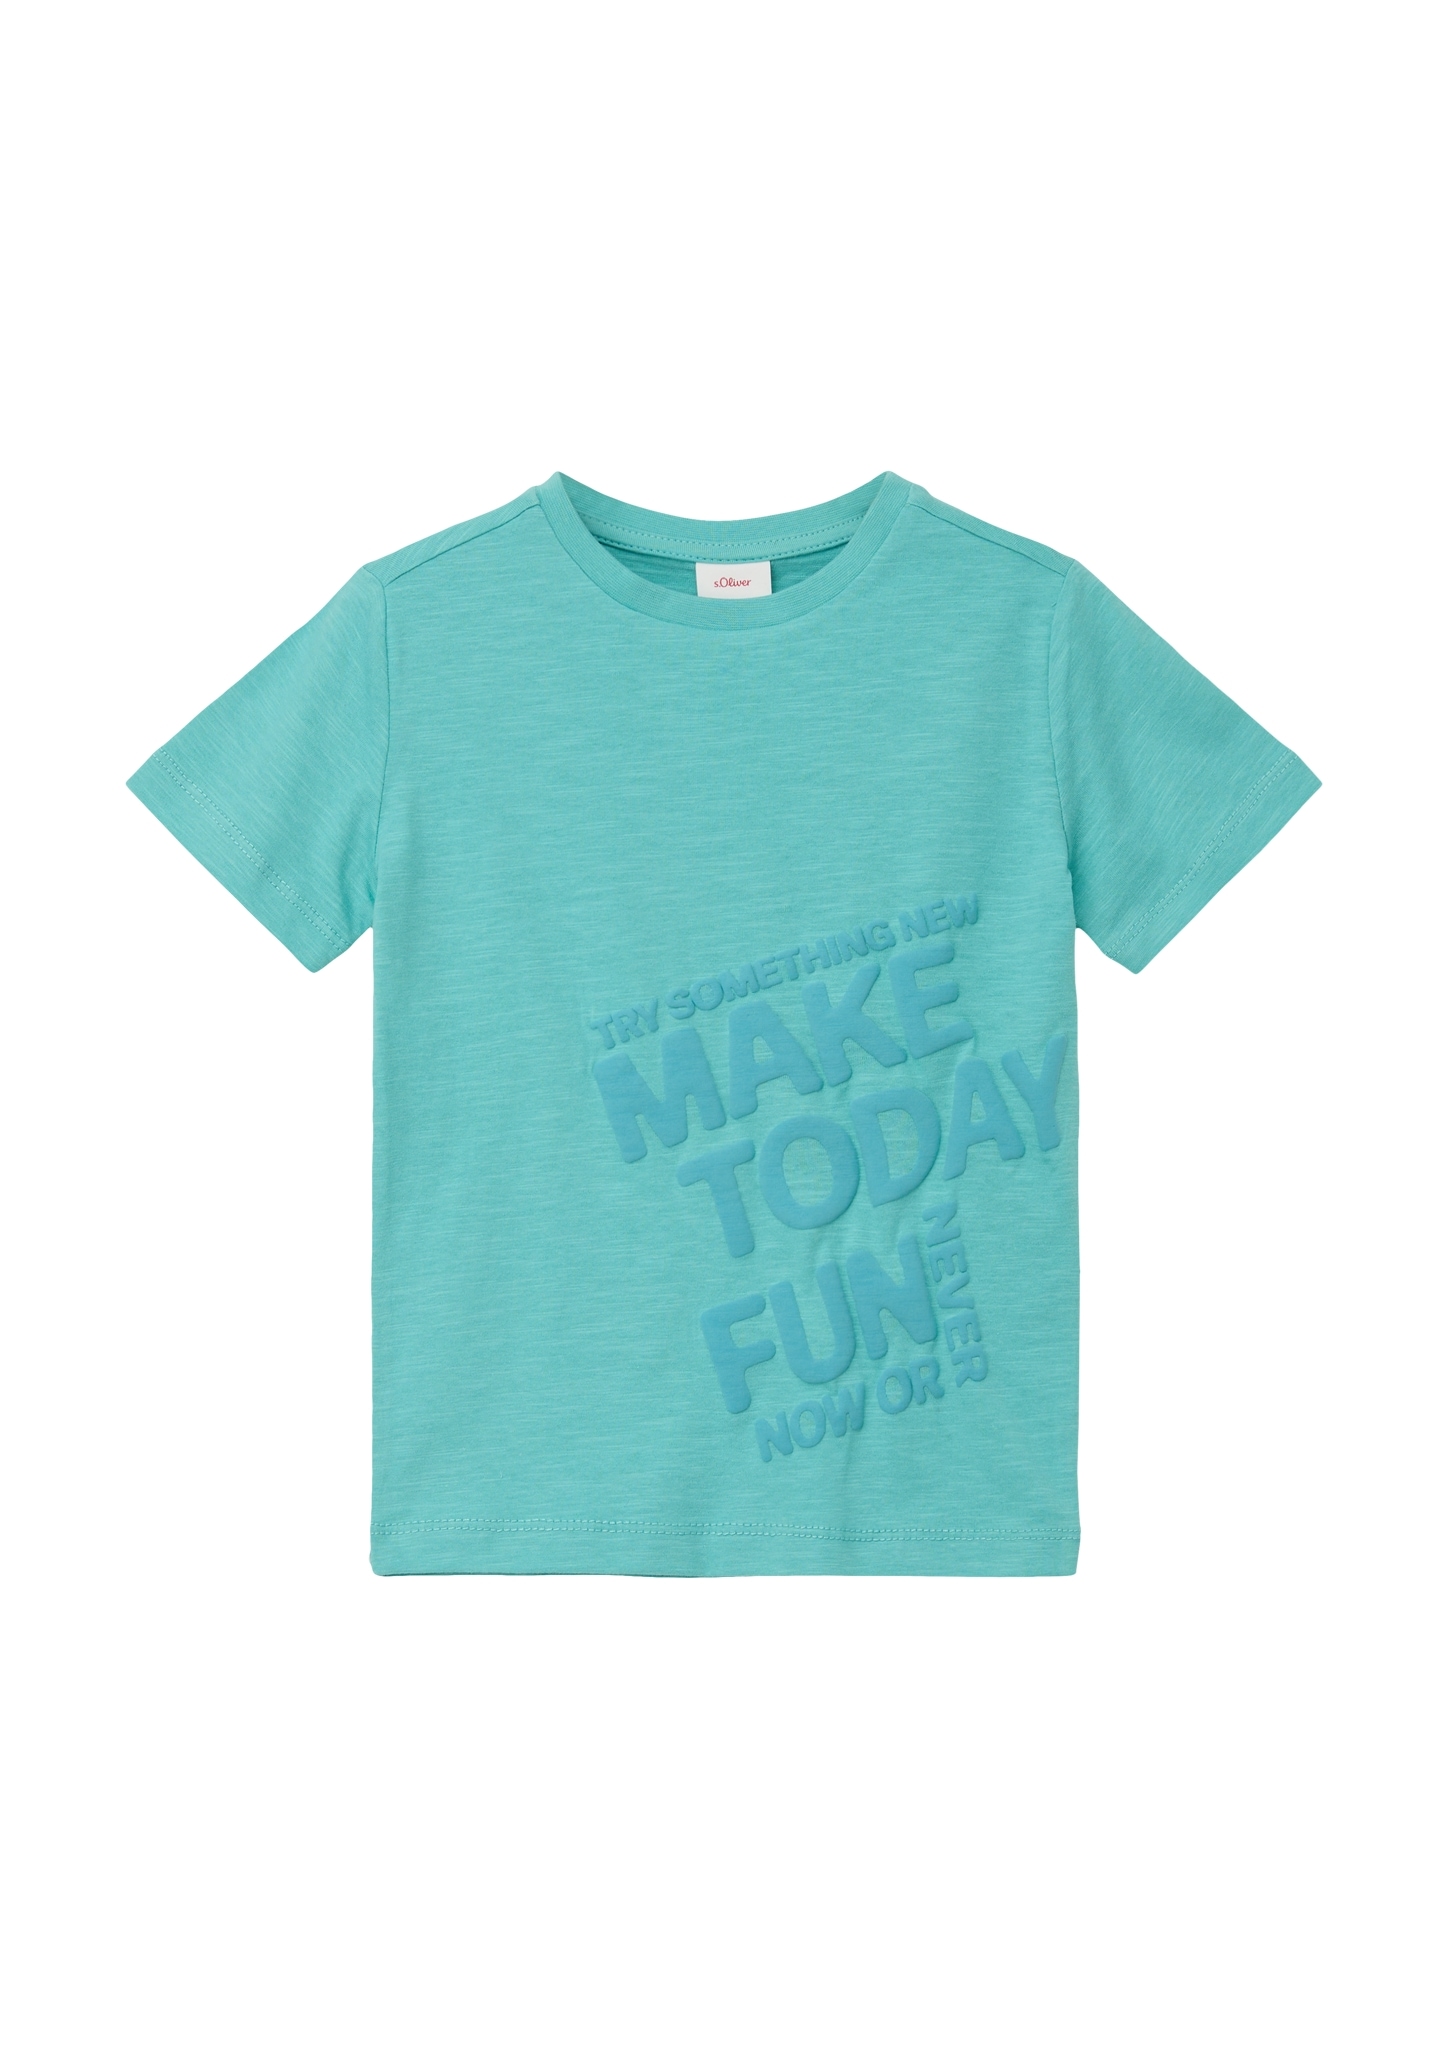 Junior T-Shirt online s.Oliver kaufen